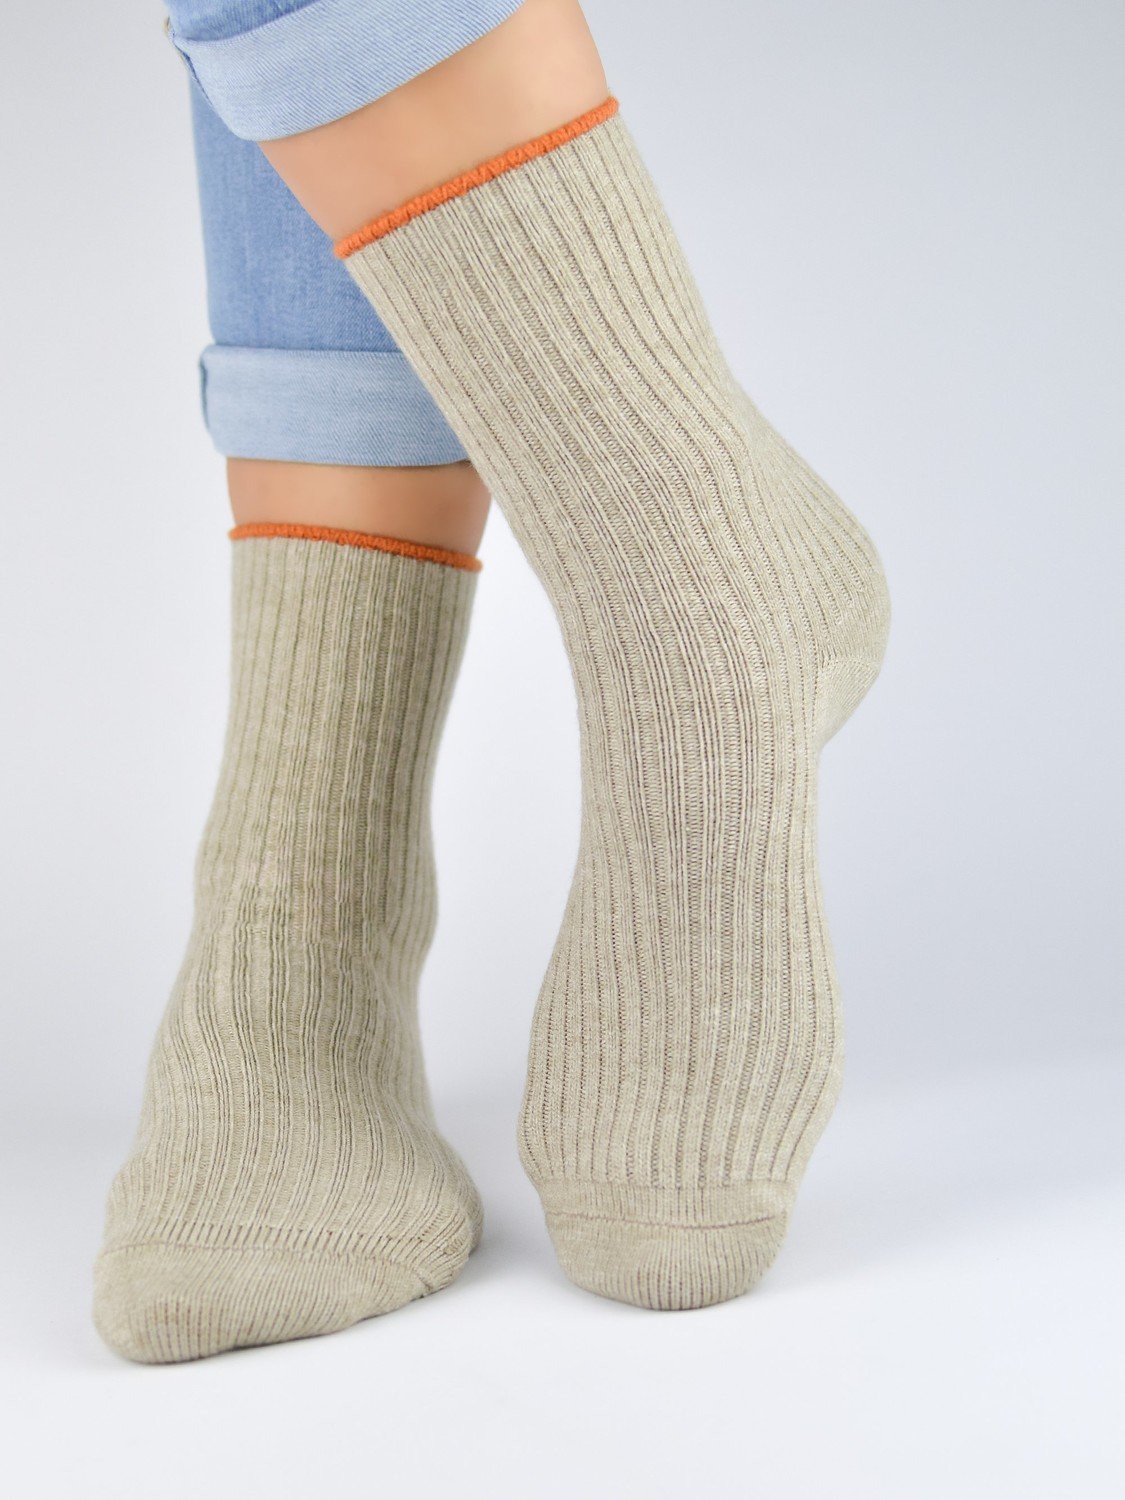 NOVITI Woman's Socks SB029-W-02